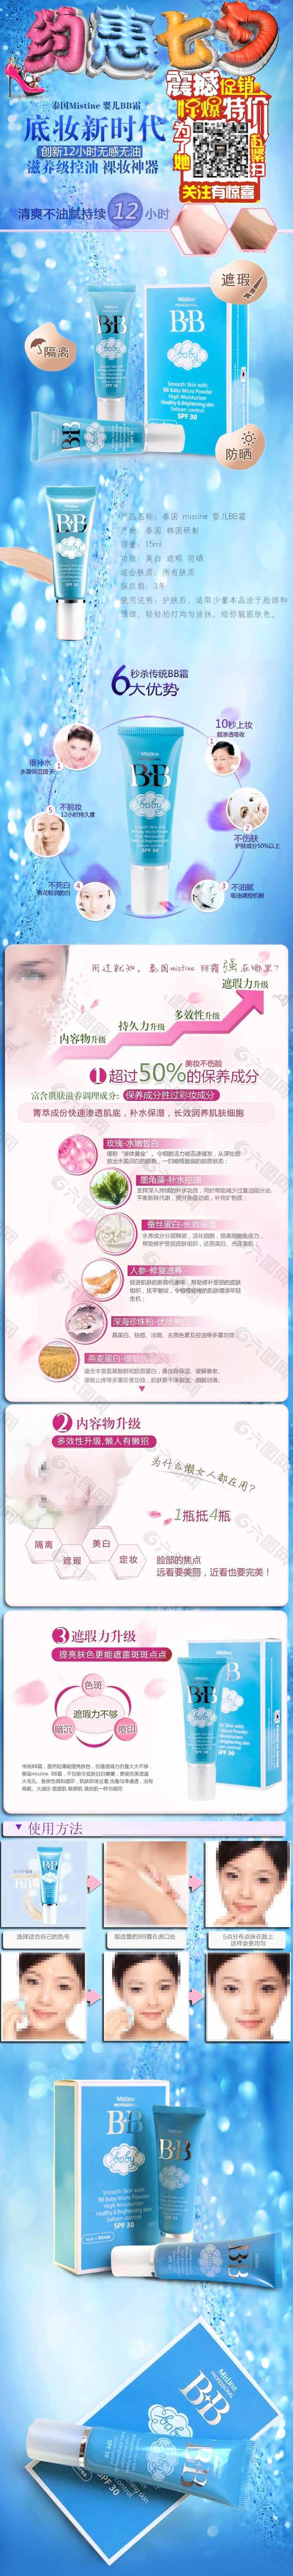 七夕情人节淘宝海报素材展架化妆品BB霜